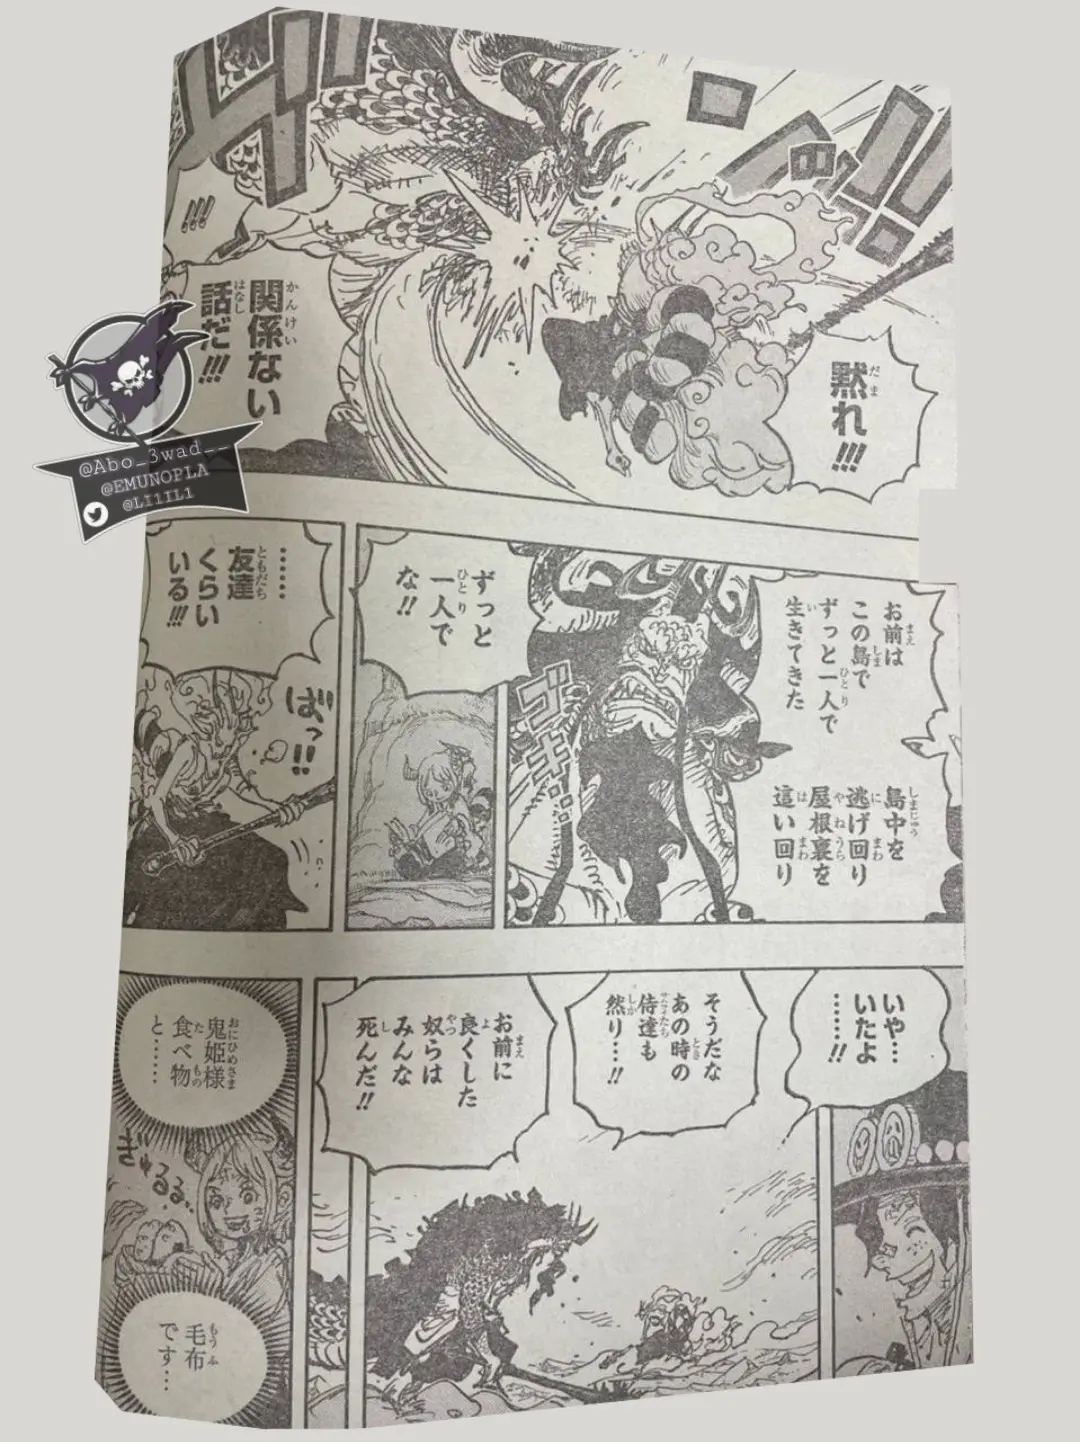 One Piece Manga 1025 Spoiler 006.jpg One Piece 1025 Spoilers: Luffy & Yamato Vs Kaido!